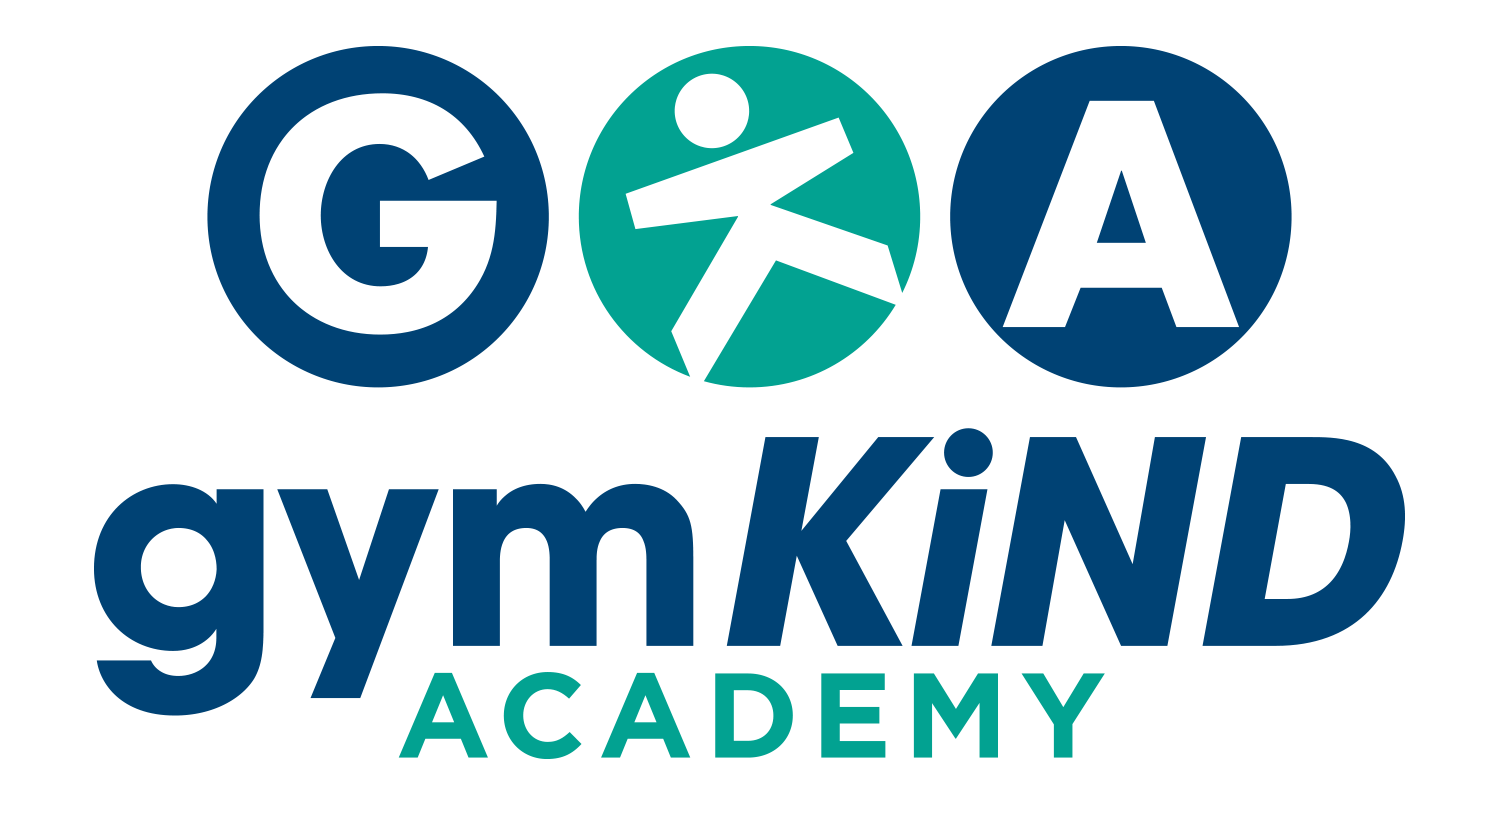 GymKind Academy Logo